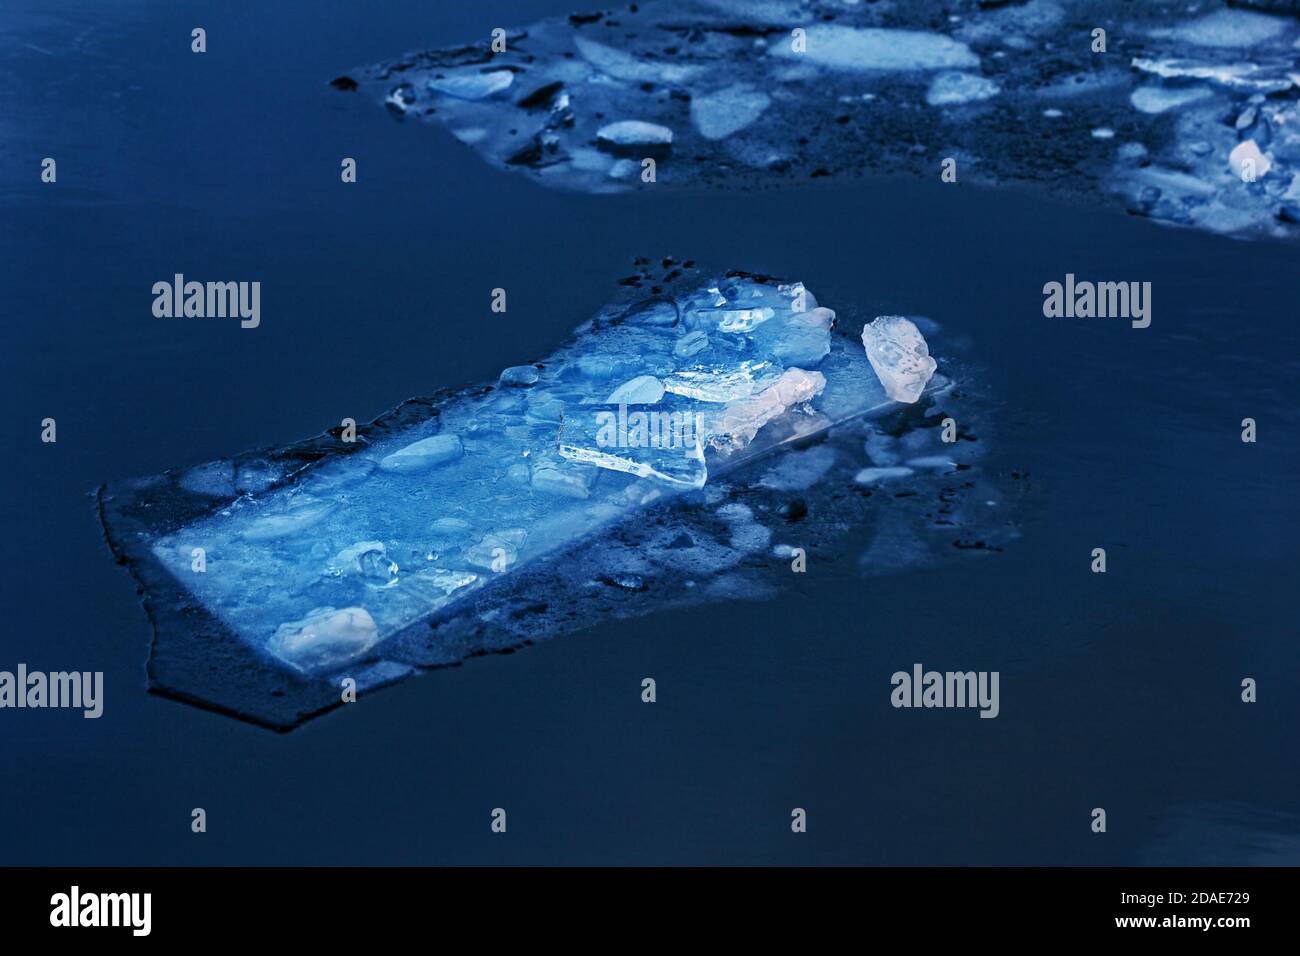 Superbe magnifique magnifique floes de glace dans l'eau bleu foncé Banque D'Images